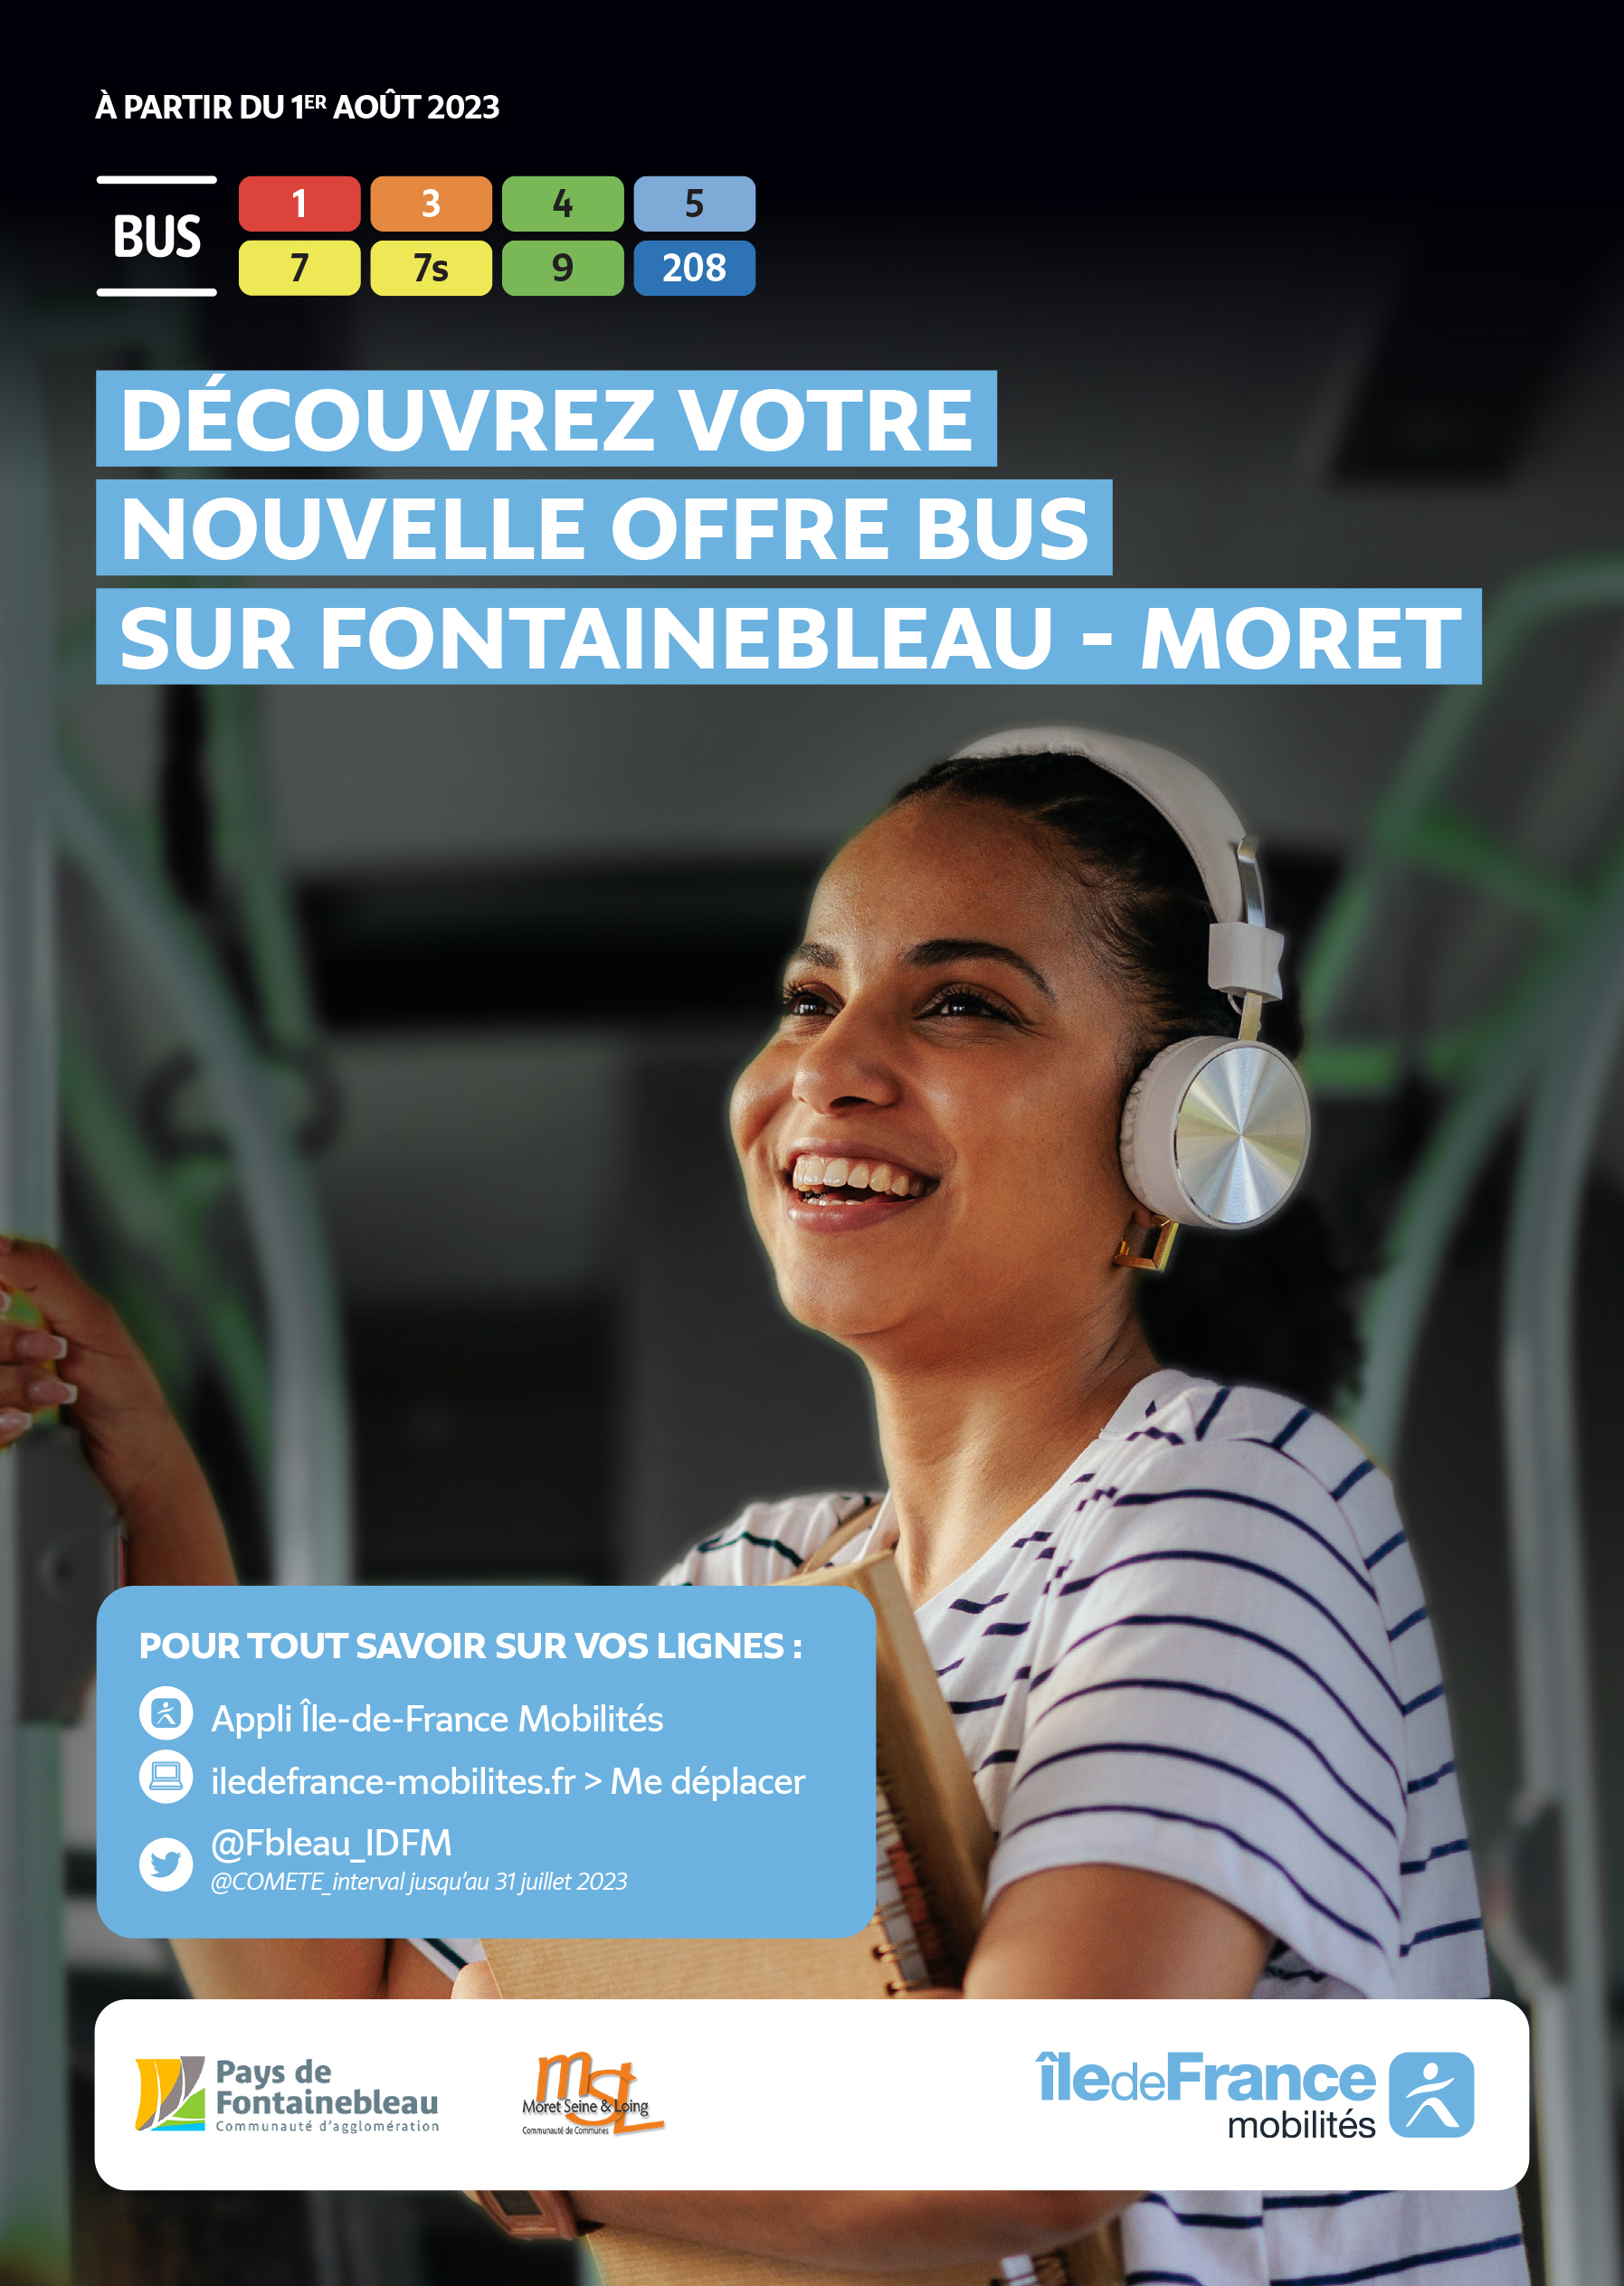 Horaires de bus Samois-sur-Seine